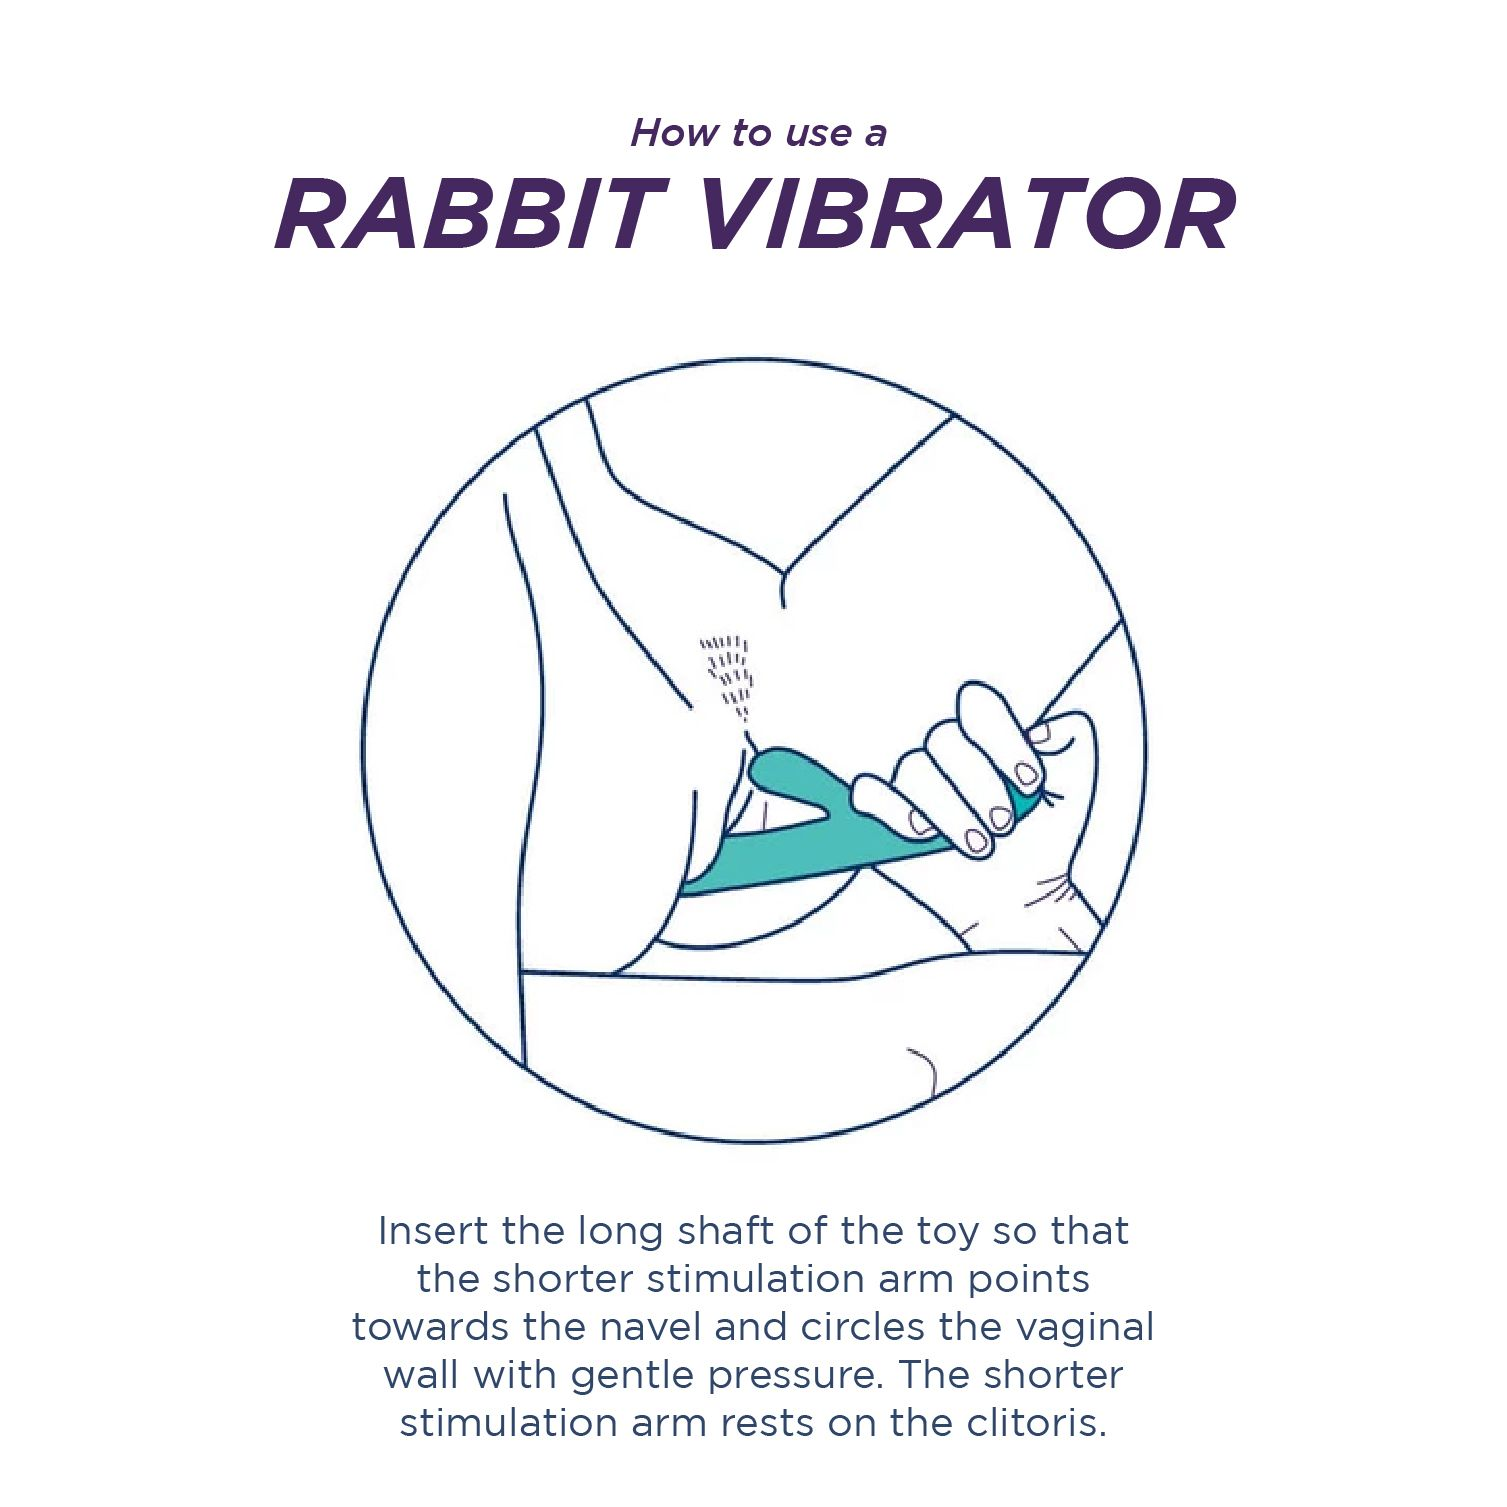 LELO Ina - Koralle Rabbit-Vibrator - LELO g-spot-vibrators 3